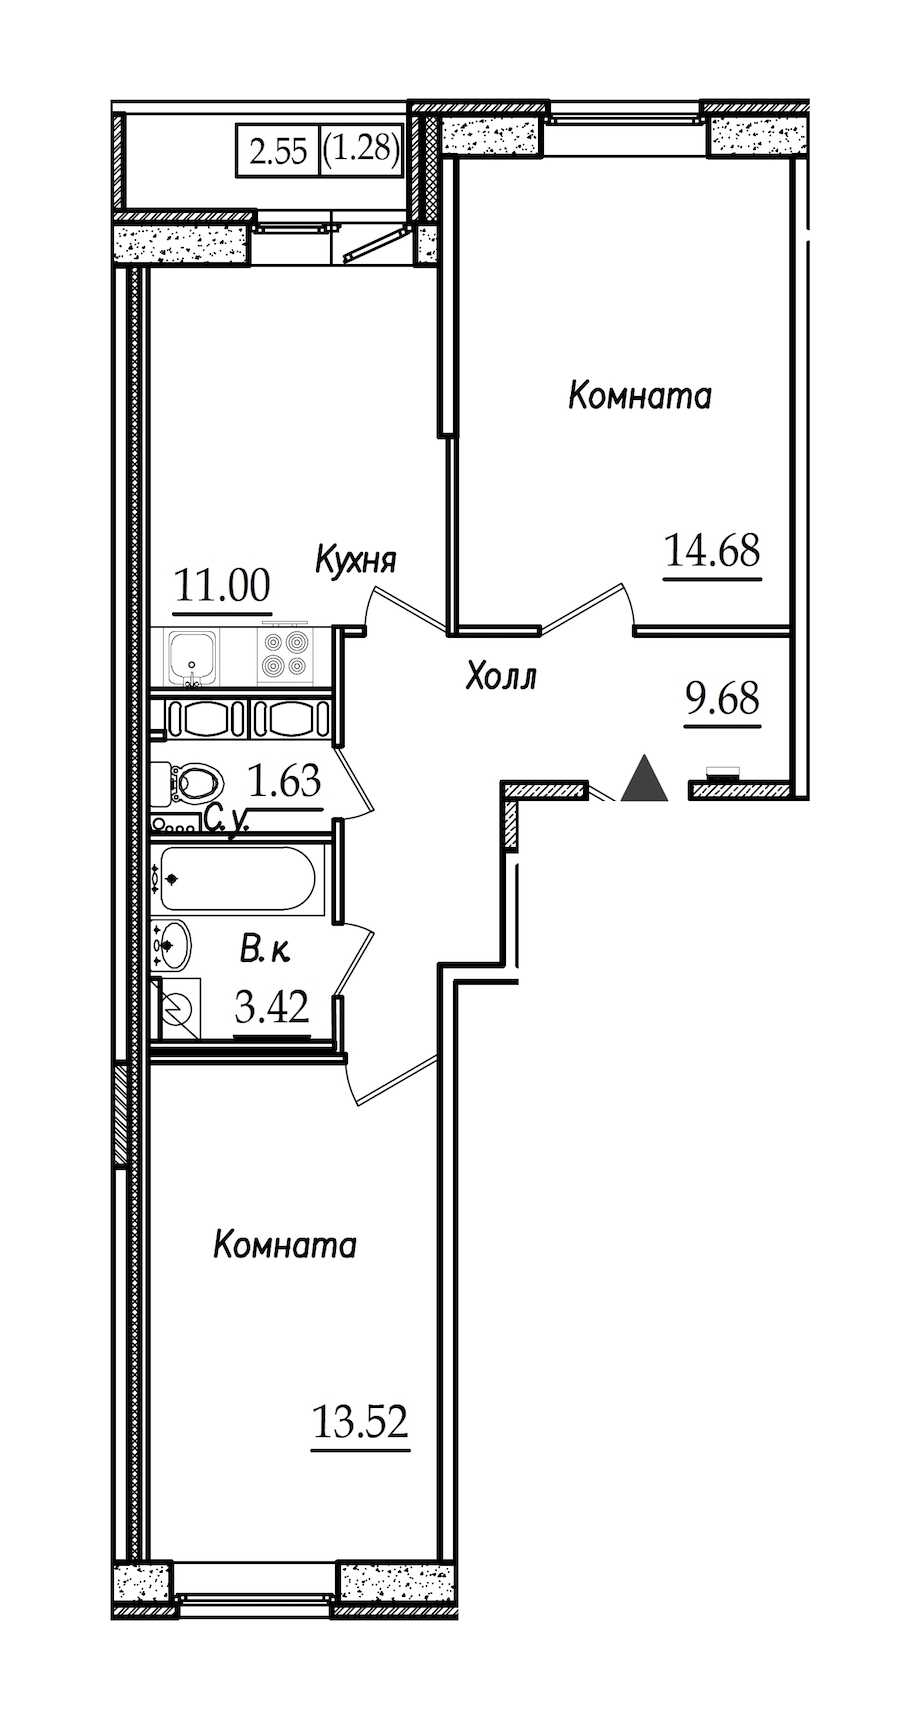 Двухкомнатная квартира в СПб Реновация: площадь 55.21 м2 , этаж: 2 – купить в Санкт-Петербурге